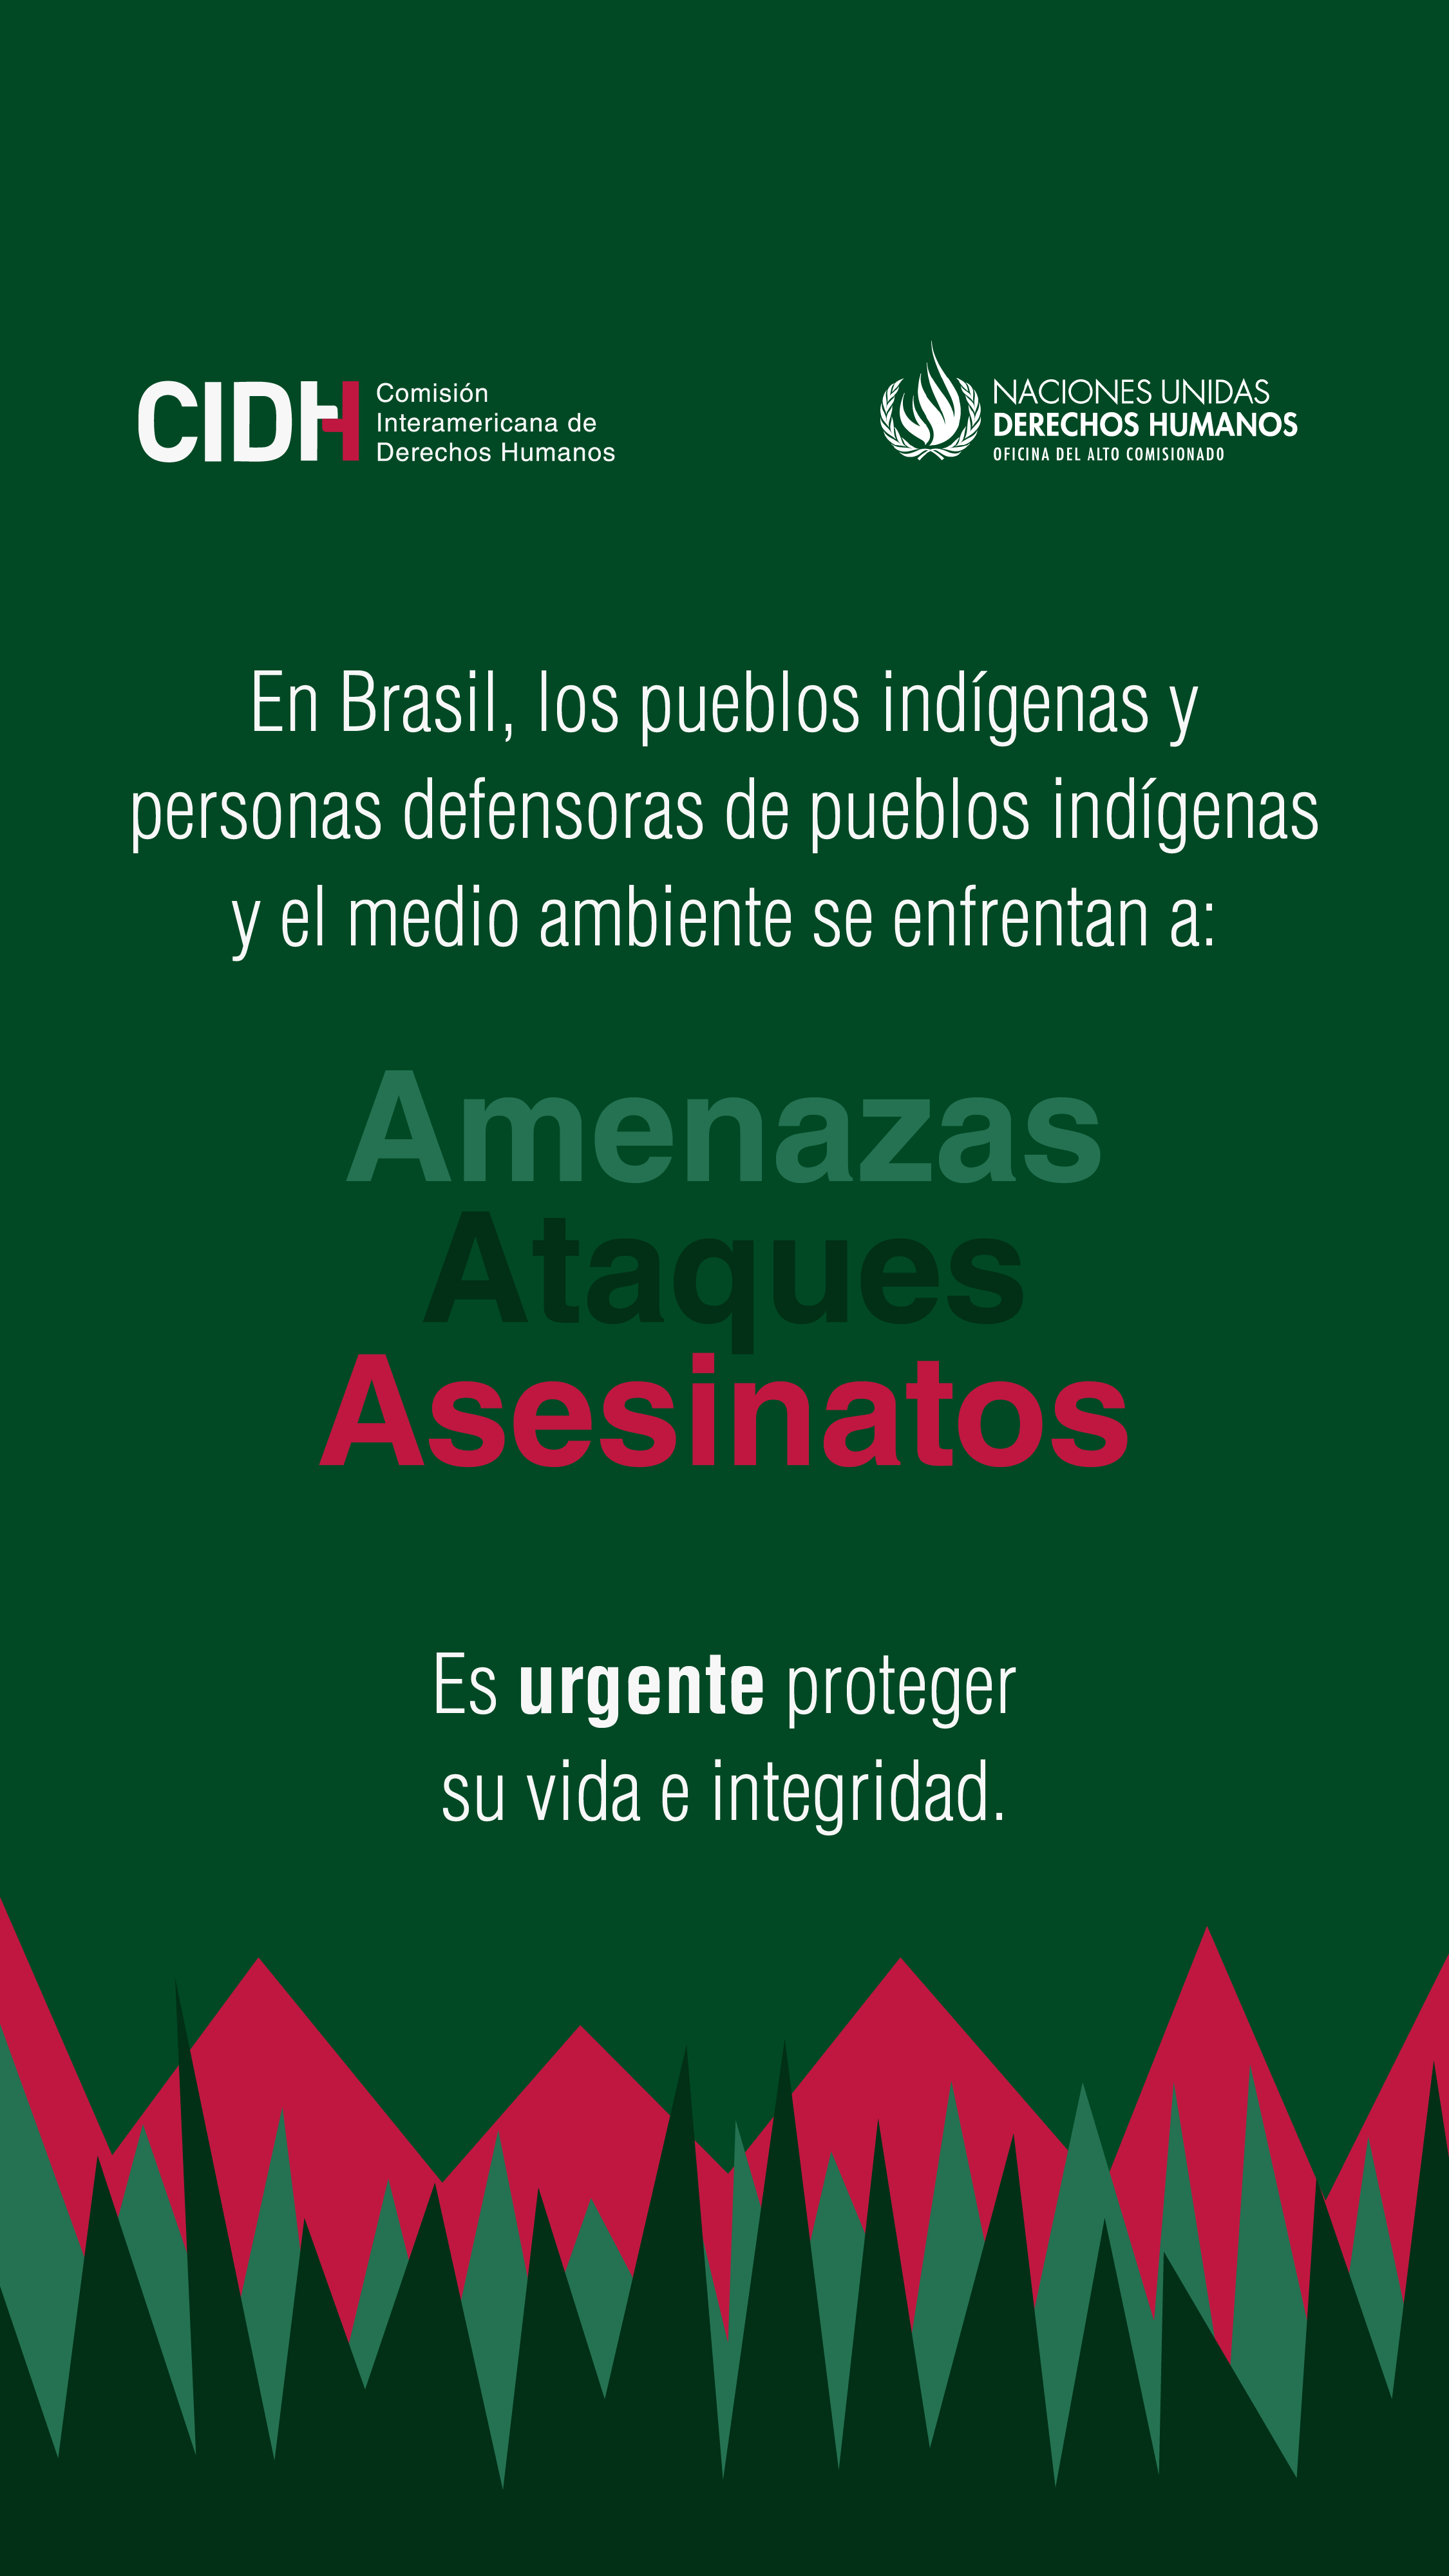 En Brasil, los pueblos indígenas y personas defensoras de pueblos indígenas y el medio ambiente se enfrentan a amenazas, ataques y asesinatos